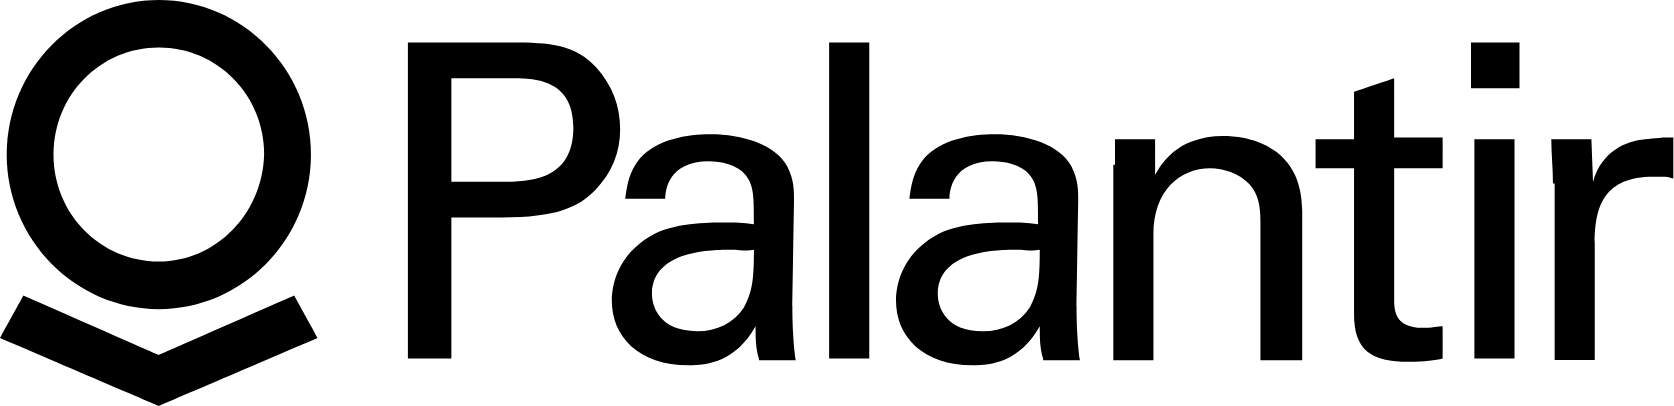 Palantir logo large (transparent PNG)